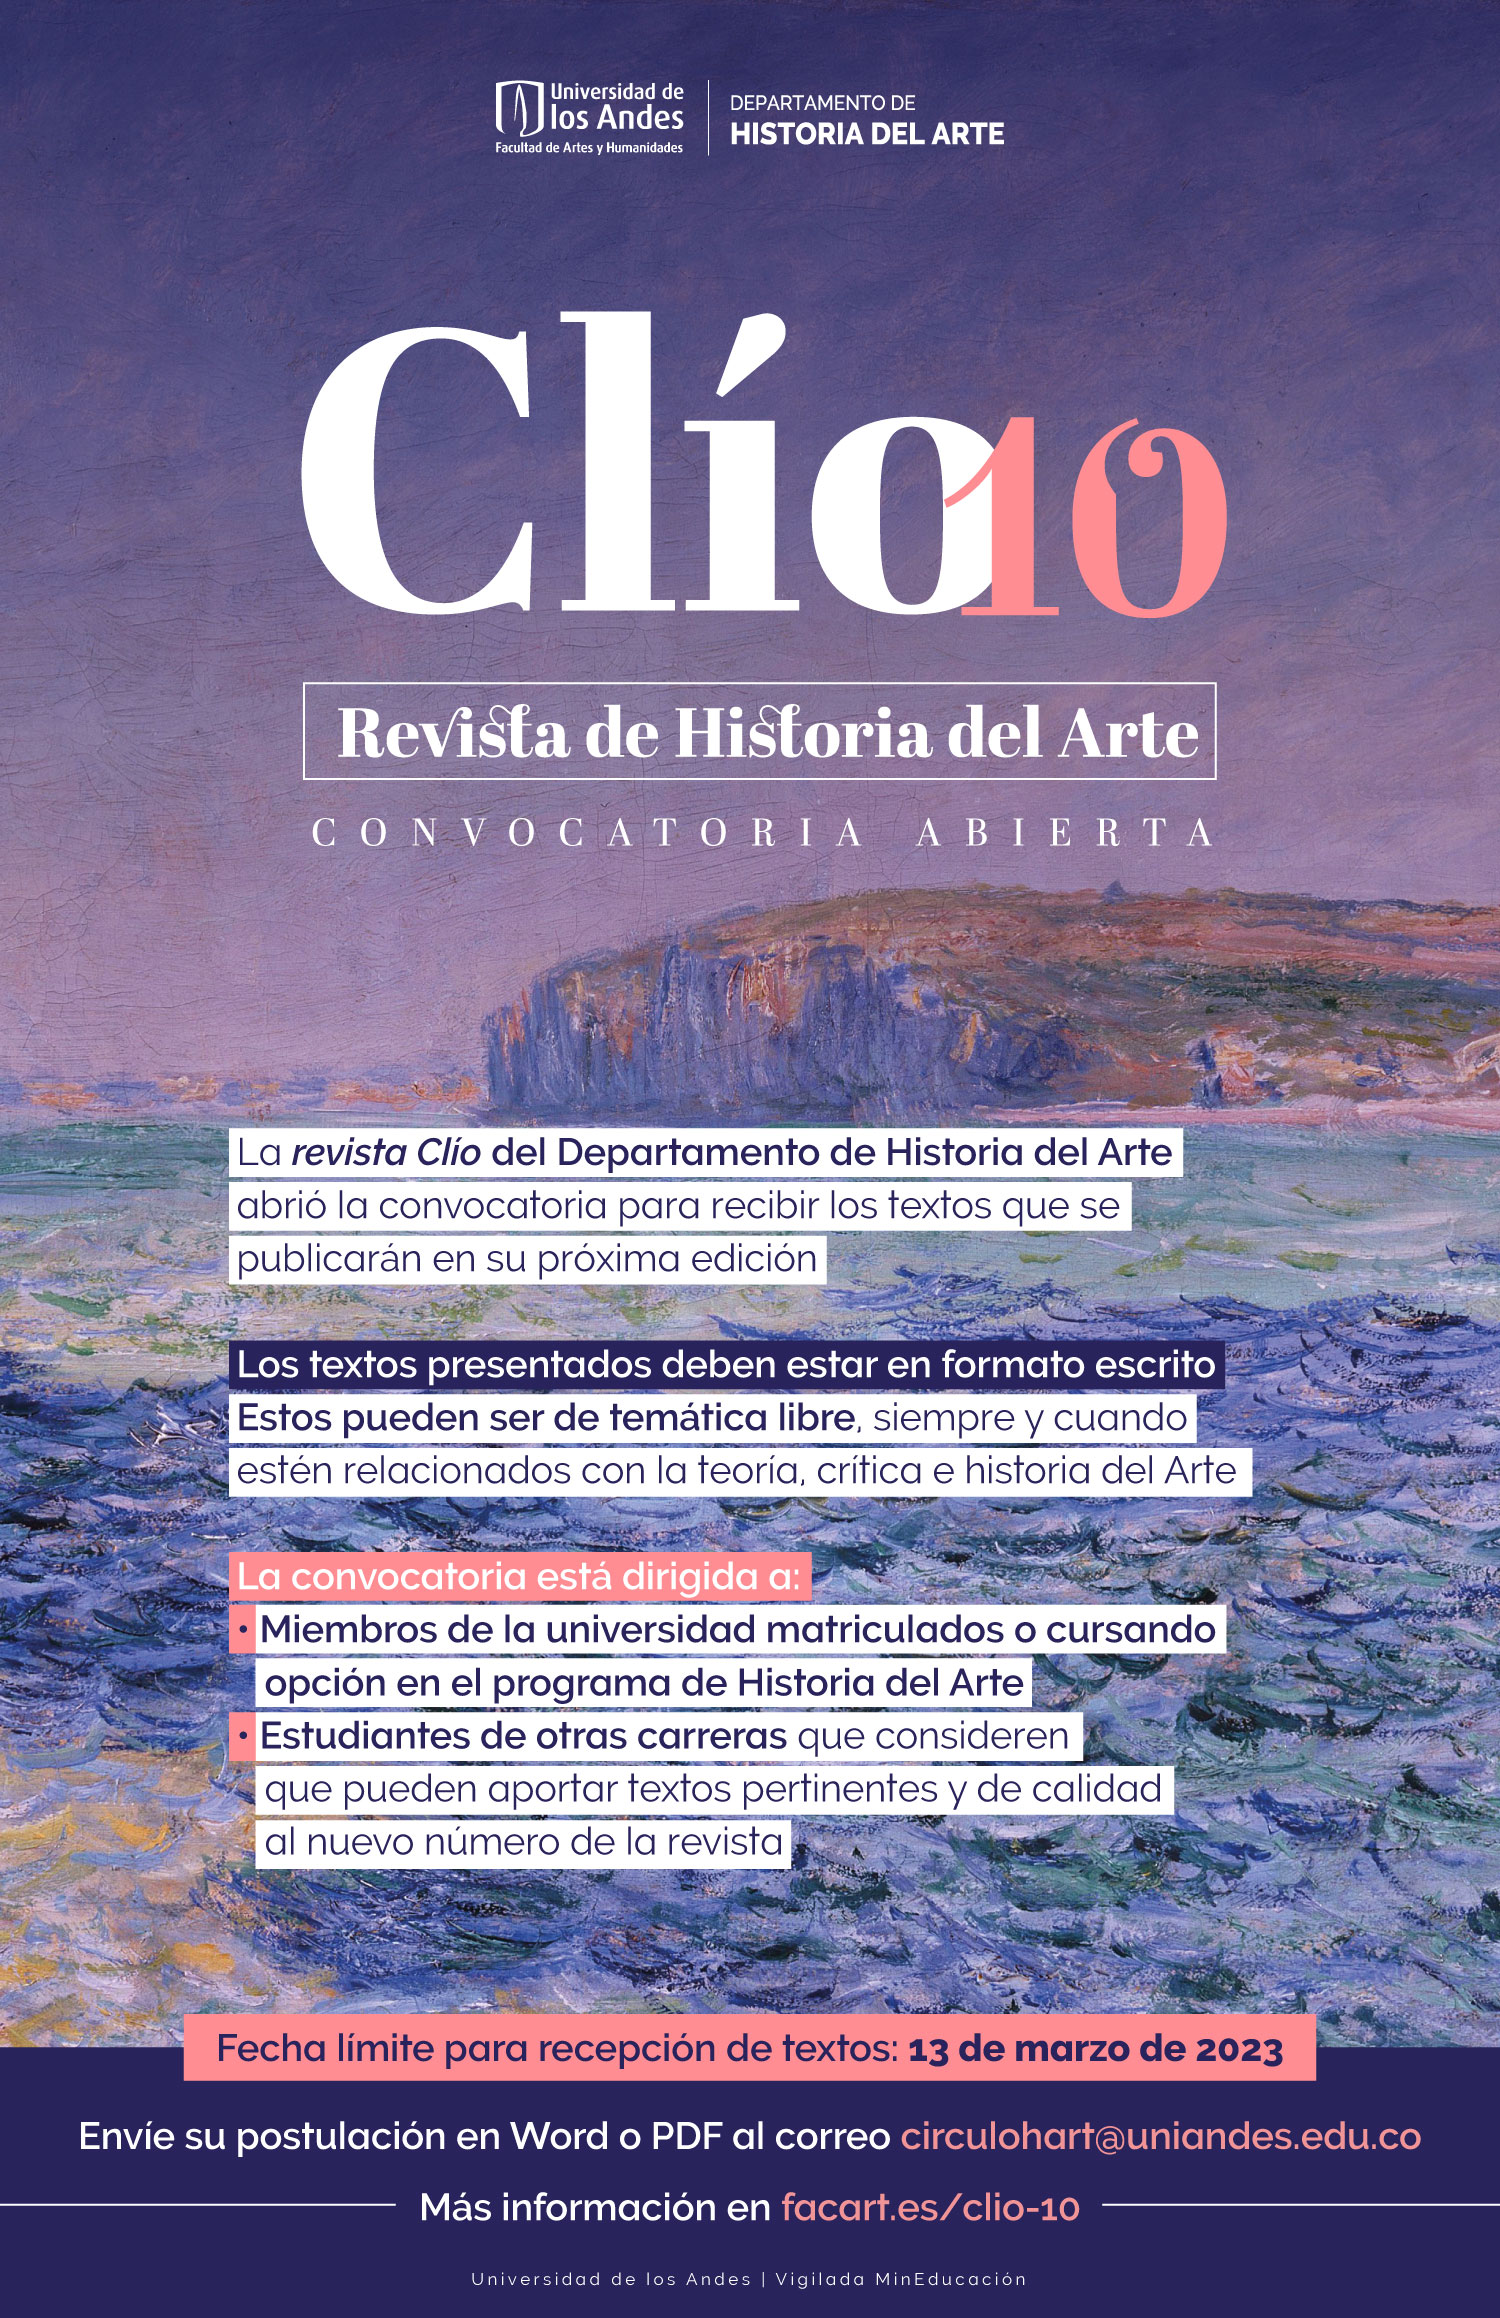 La revista Clío del Departamento de Historia del Arte abrió la convocatoria para recibir los textos que se publicarán en su próxima edición